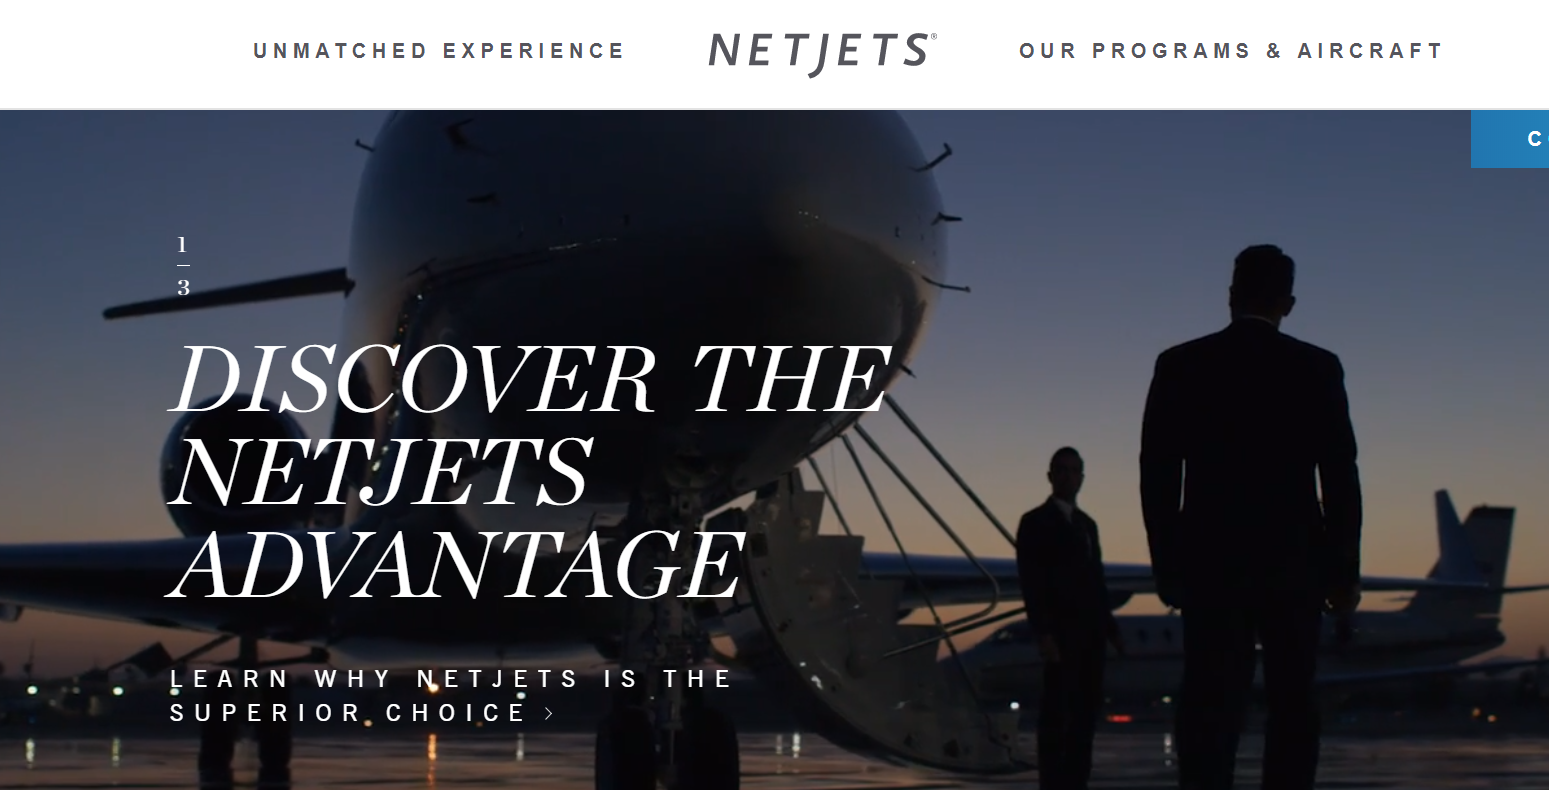 巴菲特旗下的私人航空公司NetJets拓展欧洲市场 共拥有700架飞机